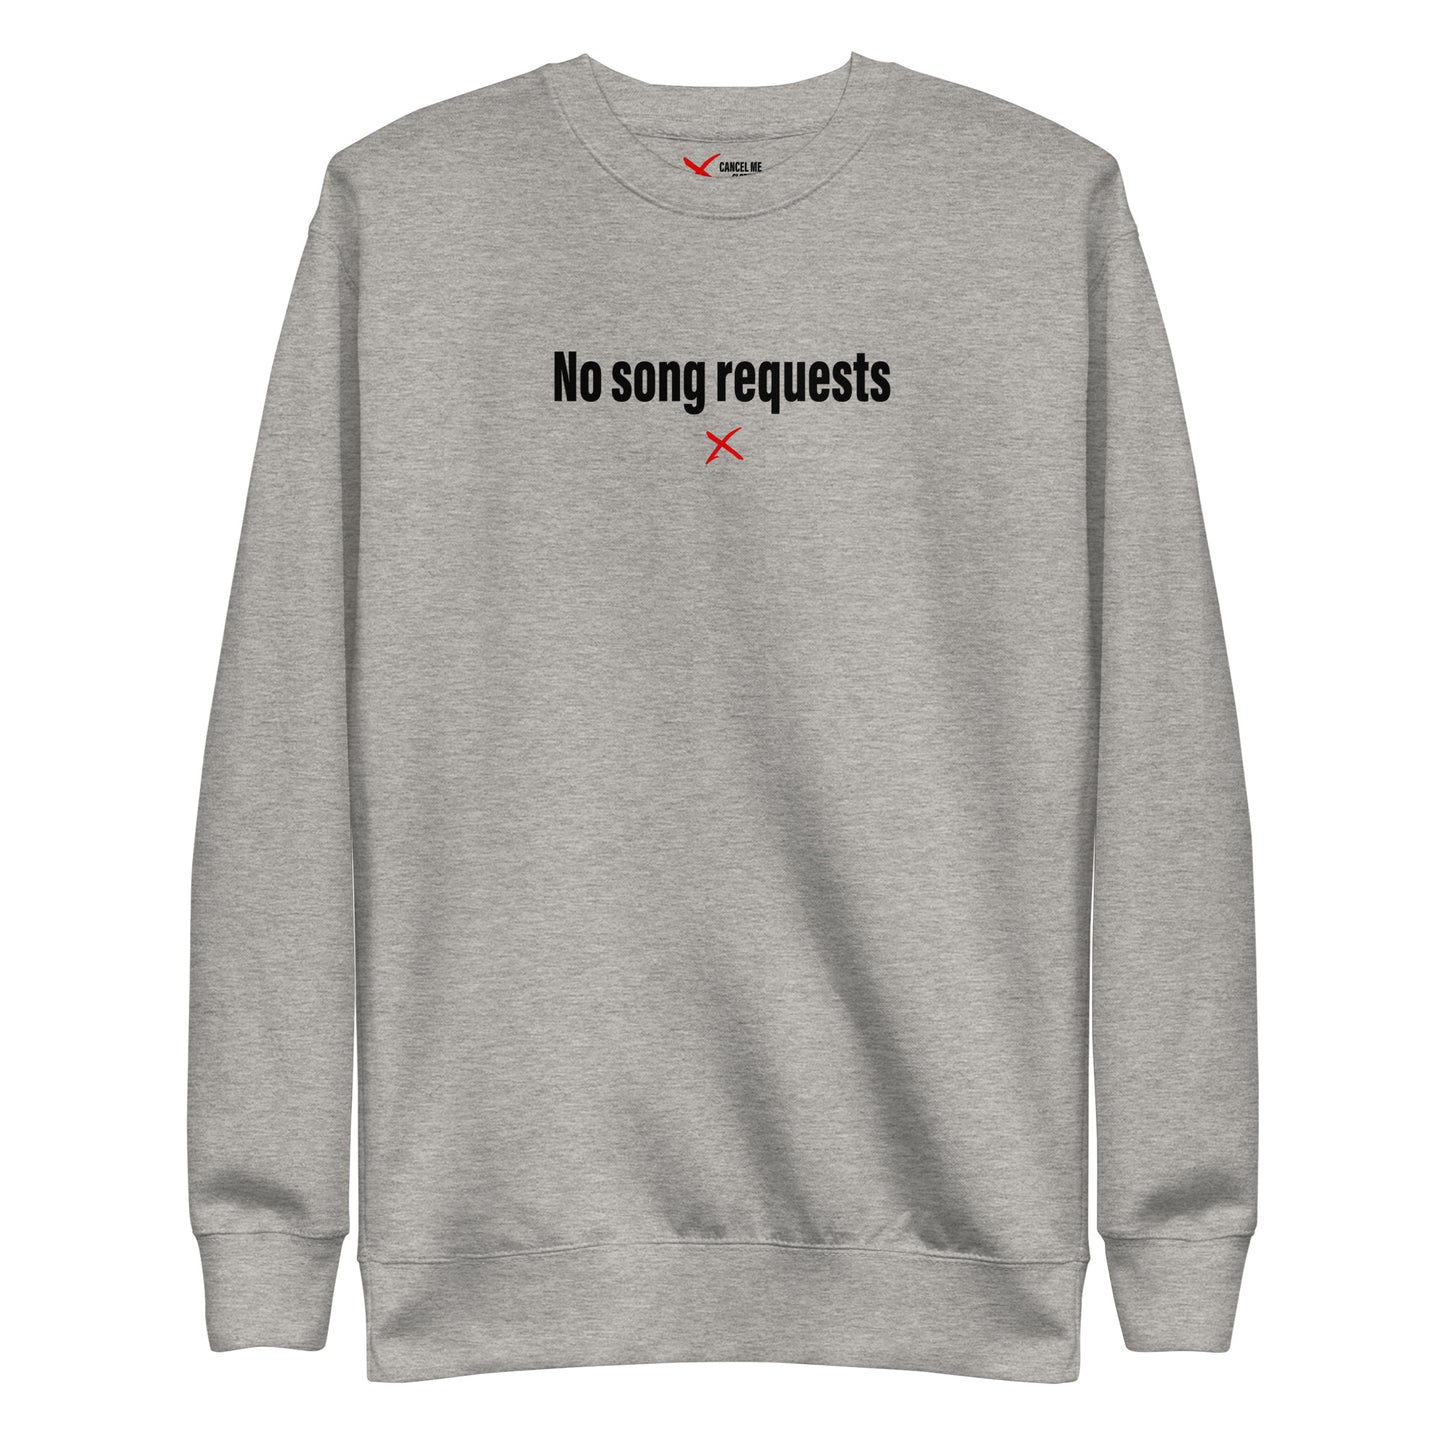 No song requests - Sweatshirt